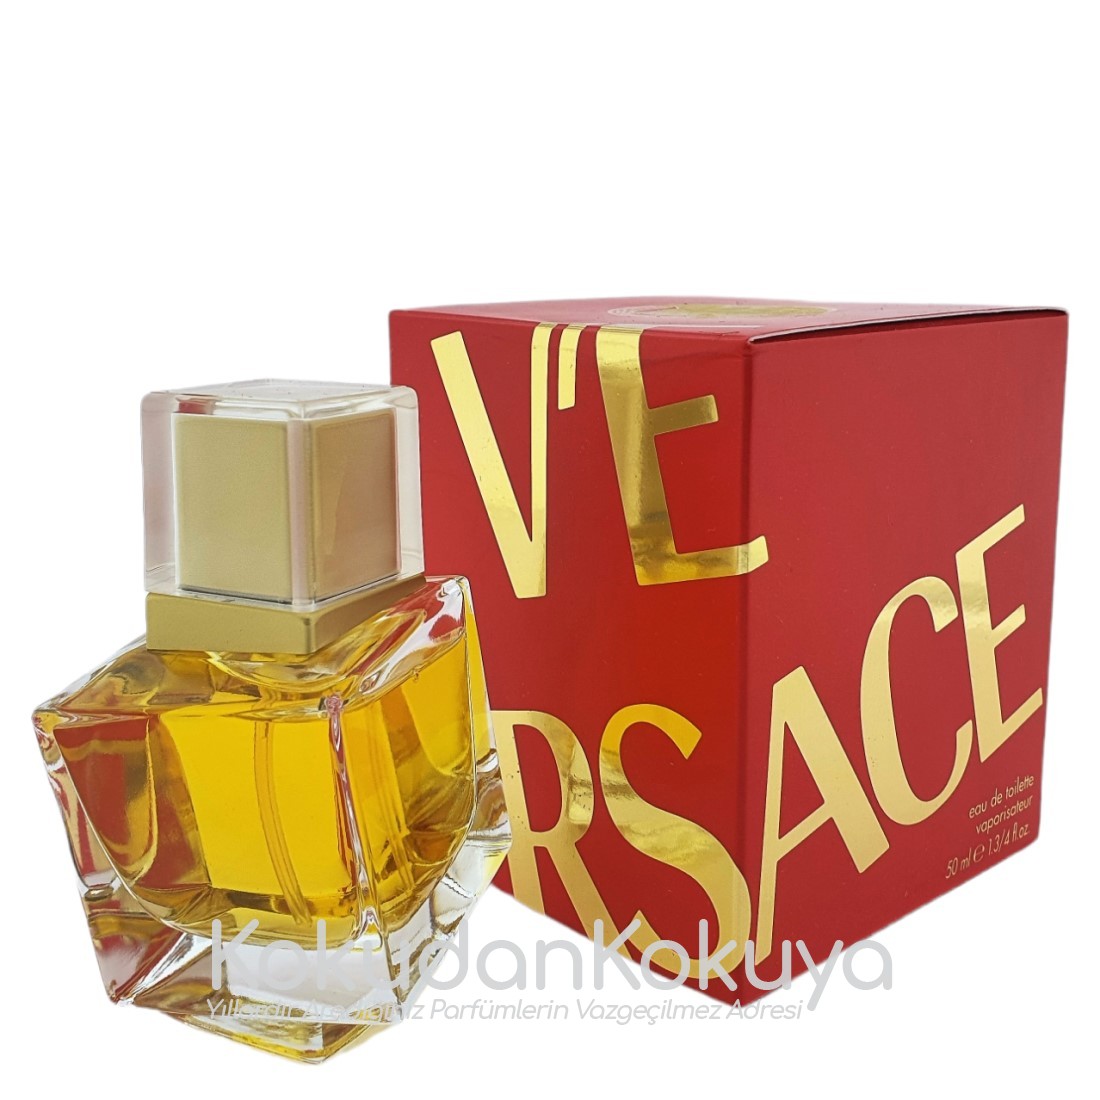 VERSACE V'E EDT (Red) (Vintage) Parfüm Kadın 50ml Eau De Toilette (EDT) Sprey 